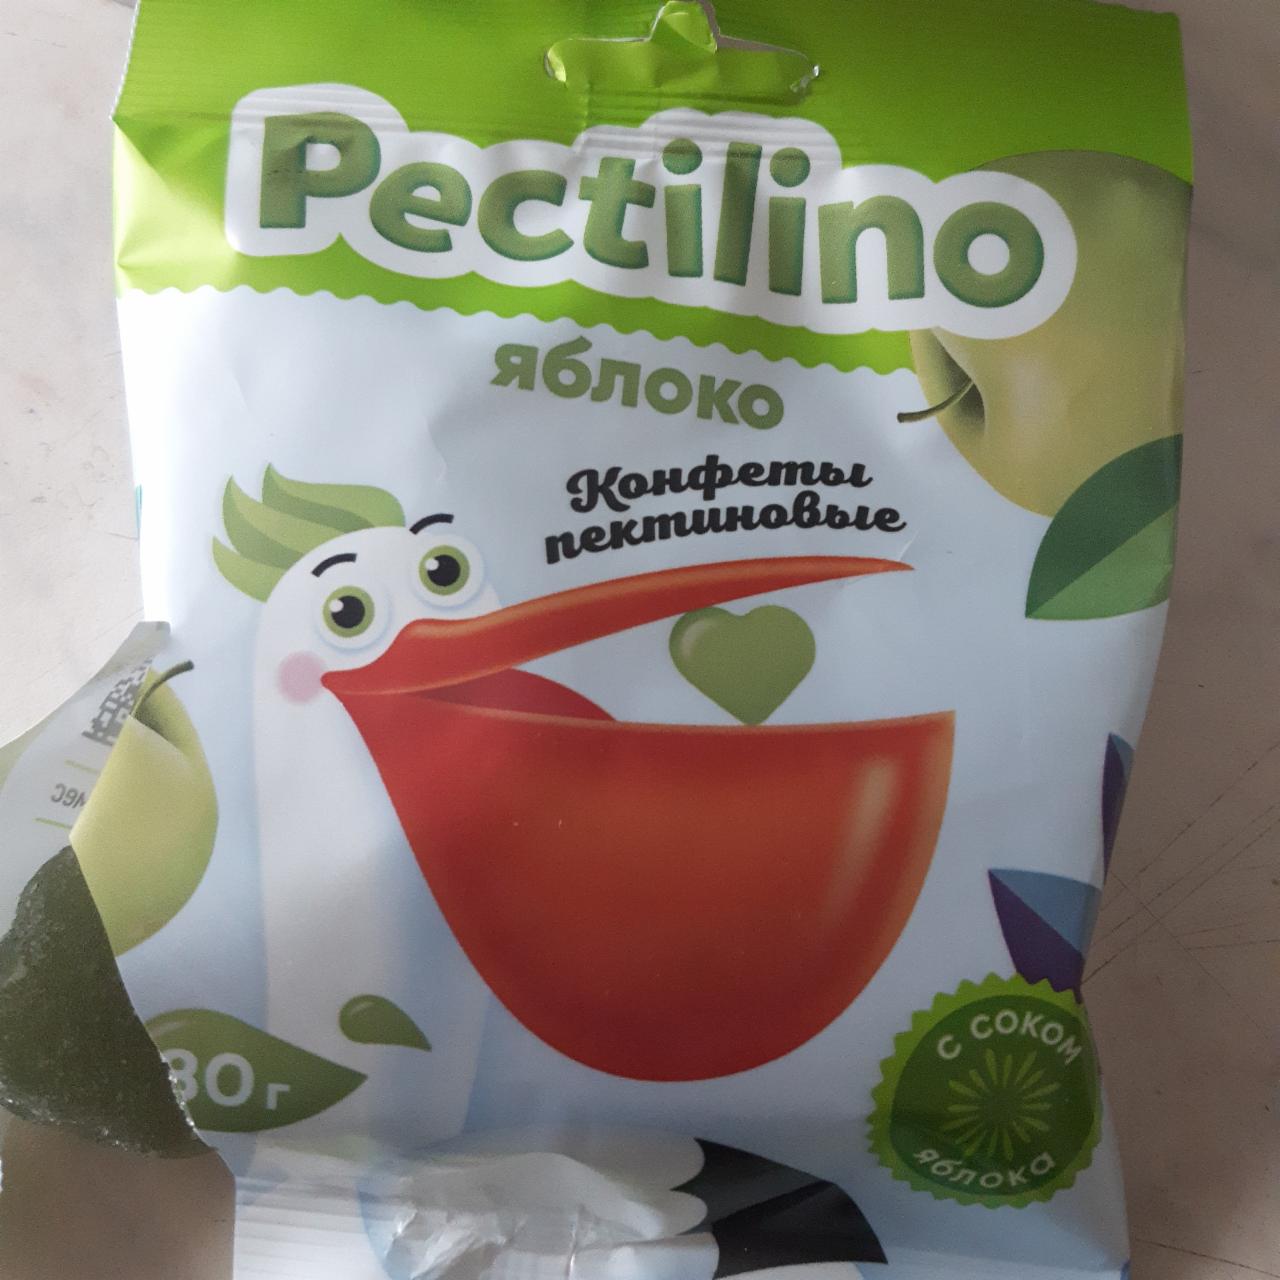 Фото - Конфеты пектиновые с соком яблока Pectilino